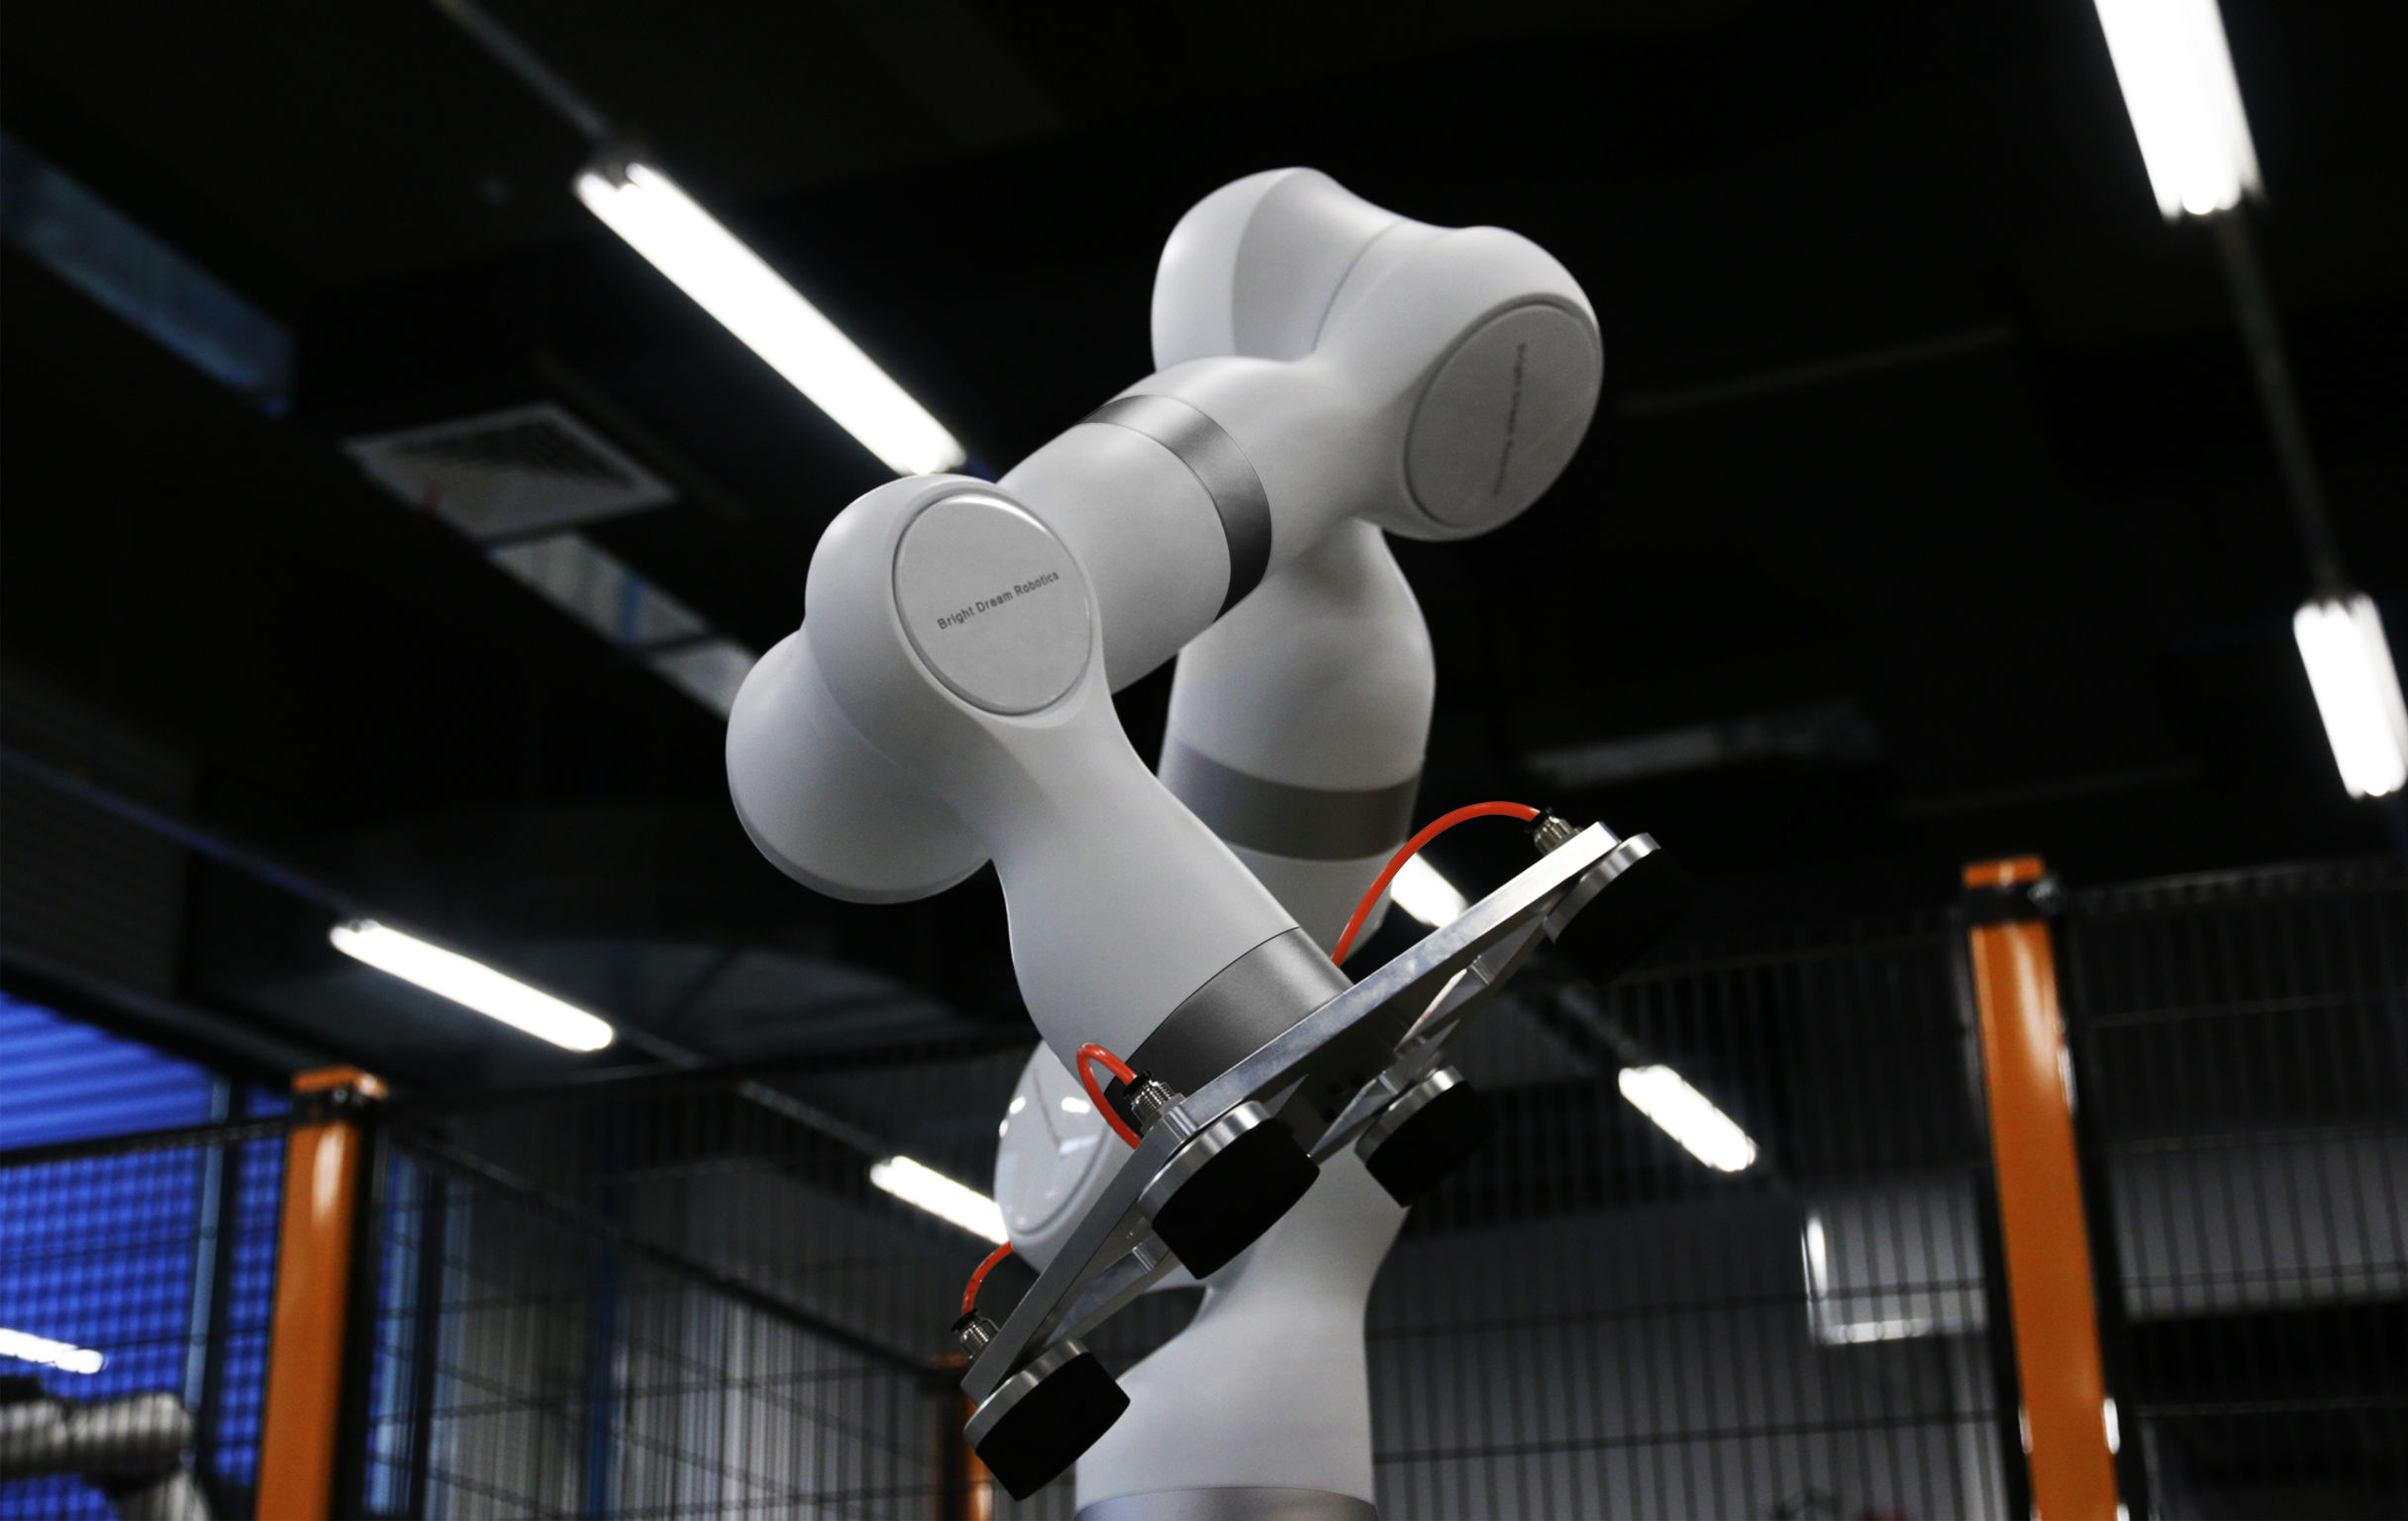 Seven-axis robotic arm